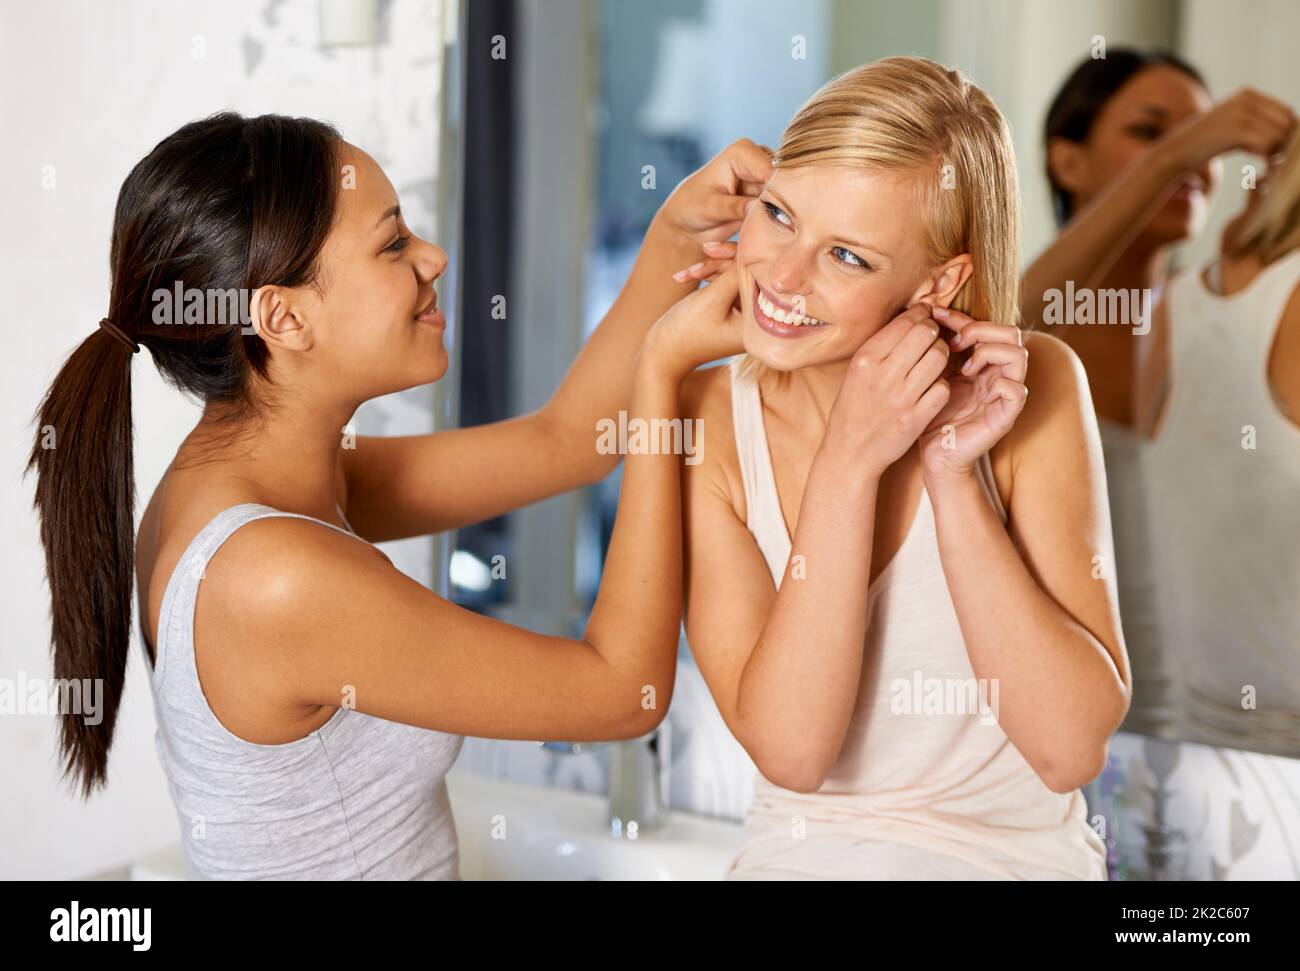 Mettendo su alcune scintille. Scatto di una giovane donna che aiuta la sua amica a mettere i suoi orecchini dentro. Foto Stock